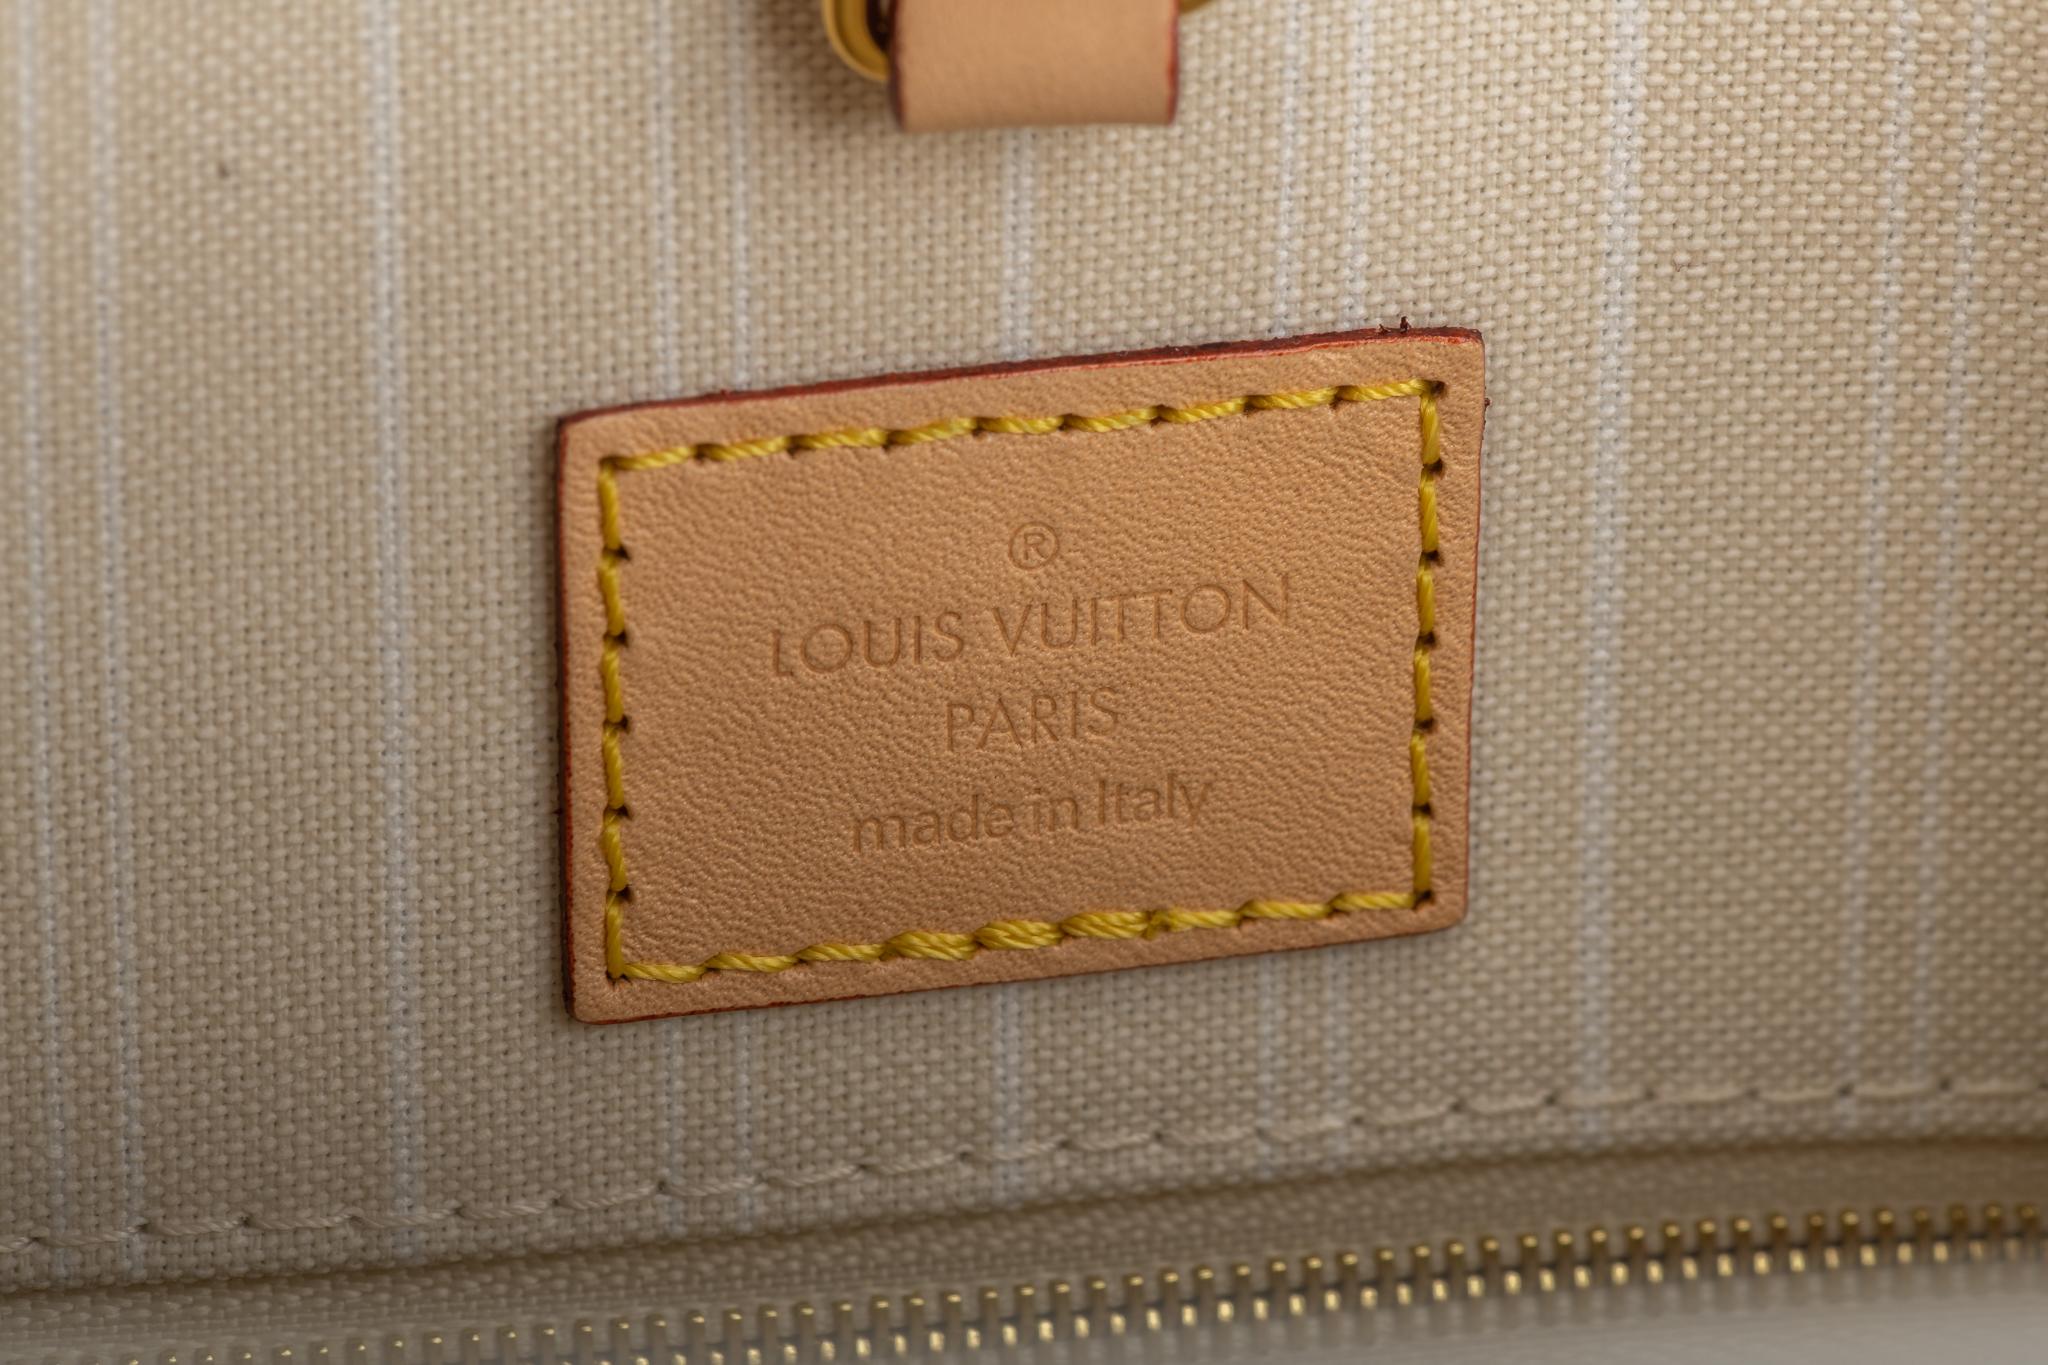 New Louis Vuitton 2021 On The Go Saint Tropez Bag 4